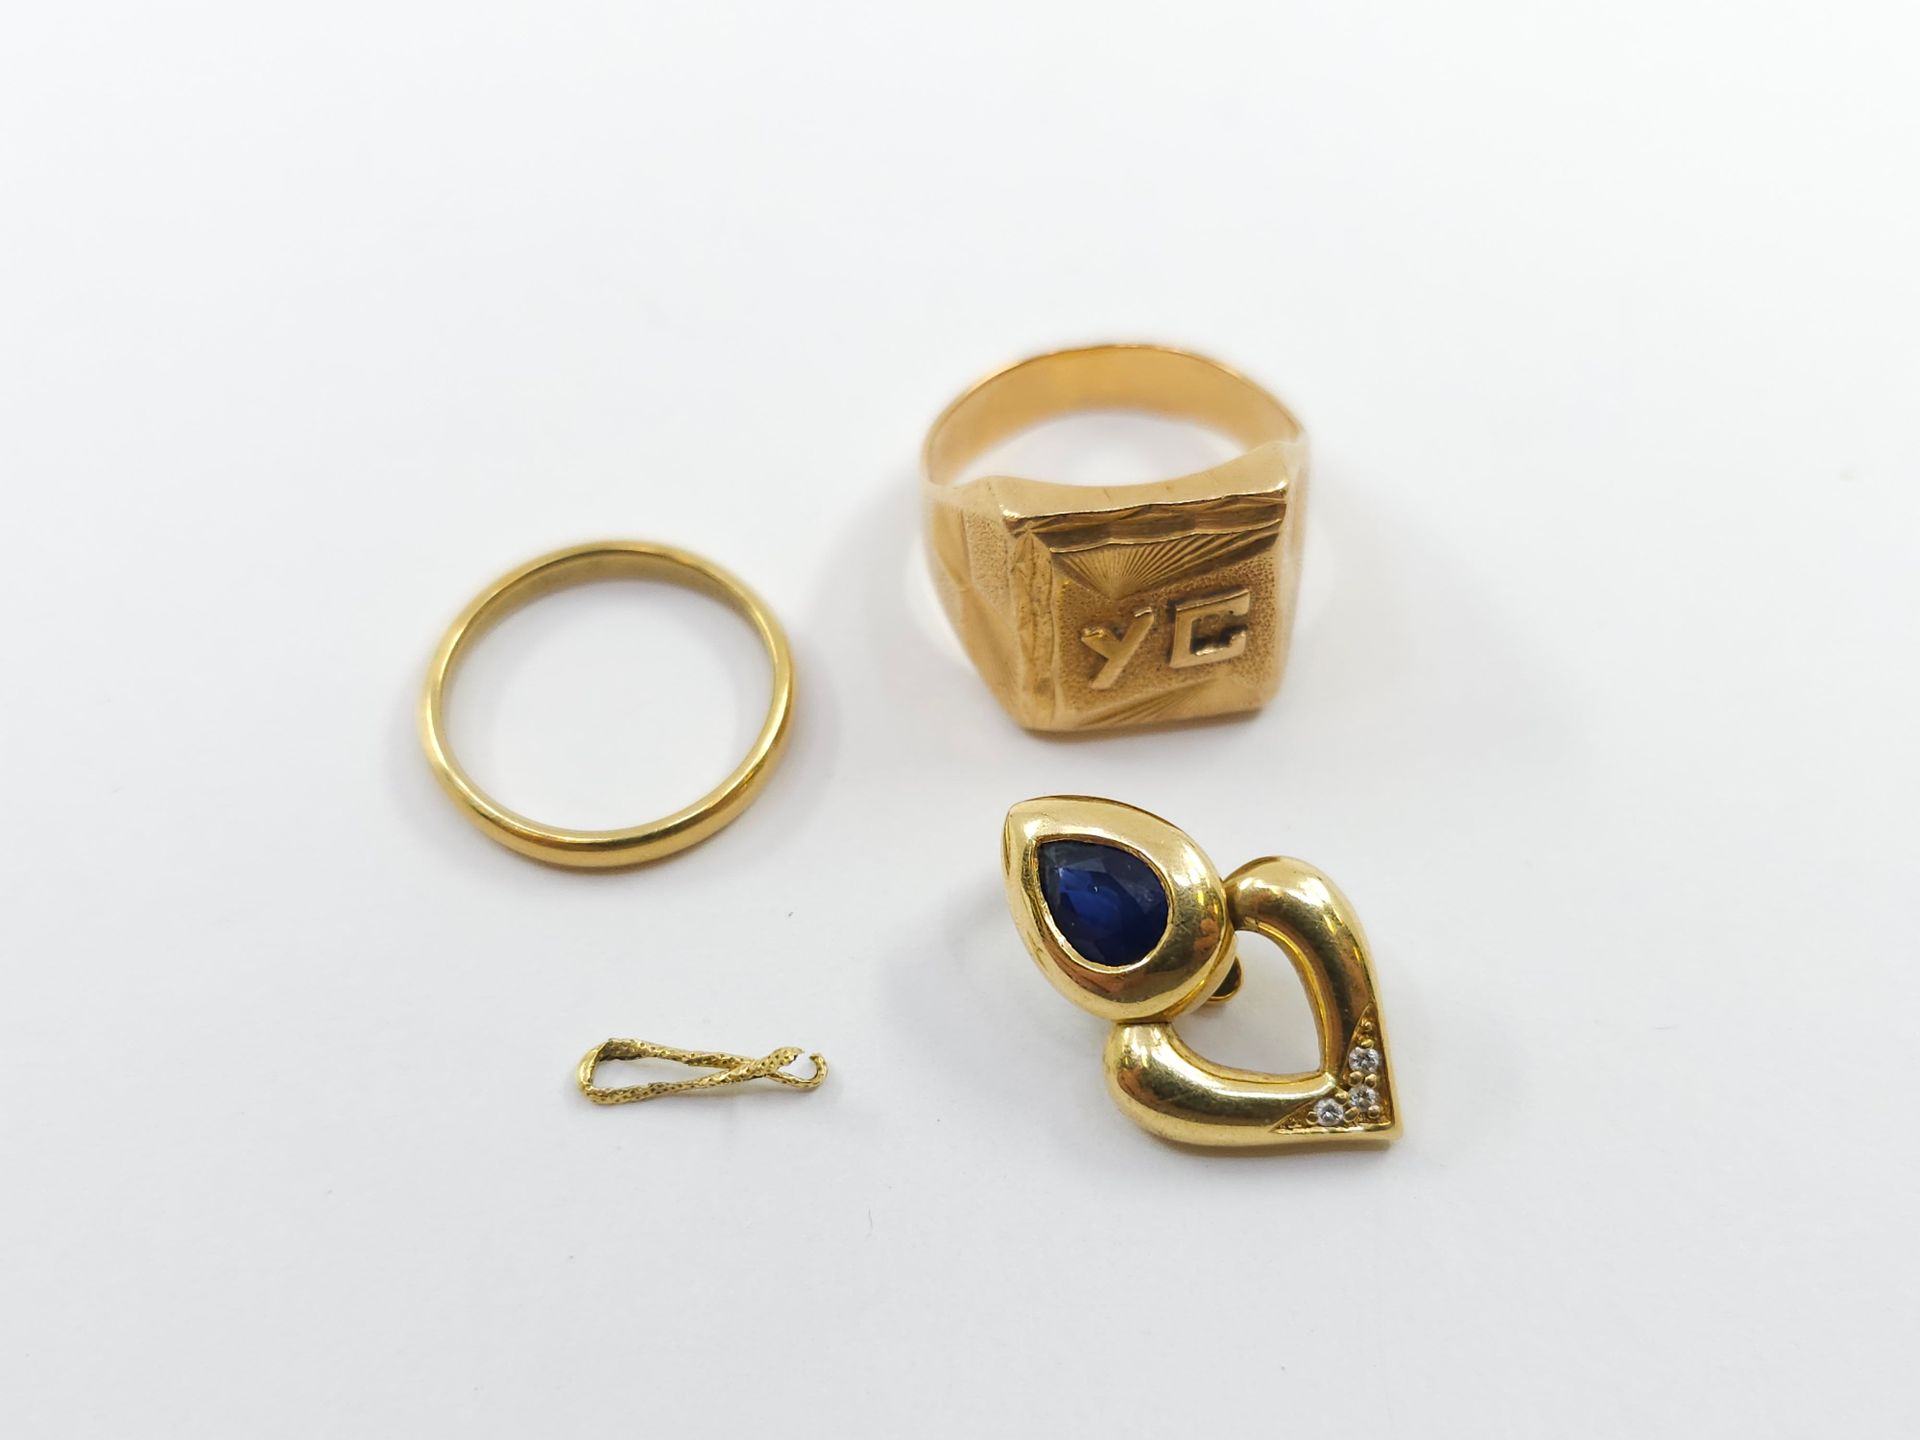 Null 一批 750° 黄金，包括 ：
一枚指环 
一个搭扣
一枚结婚戒指 
一块碎金 
重量：13.73 克